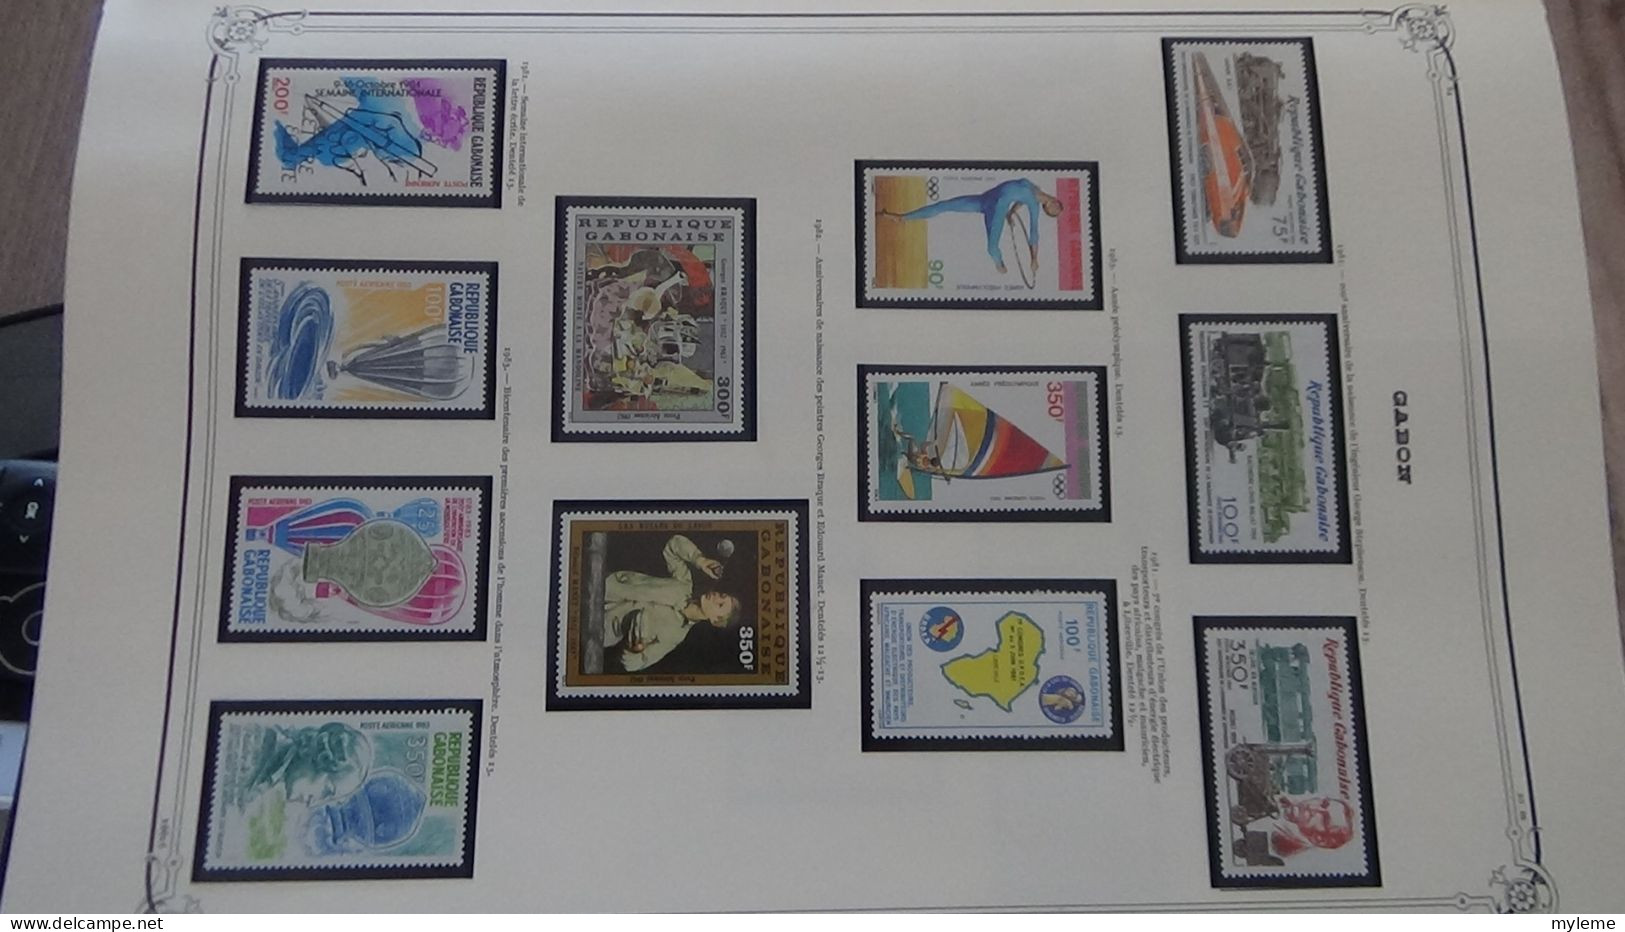 BC101 Collection de timbres et blocs ** du Gabon sur feuille d'album.  A saisir !!!